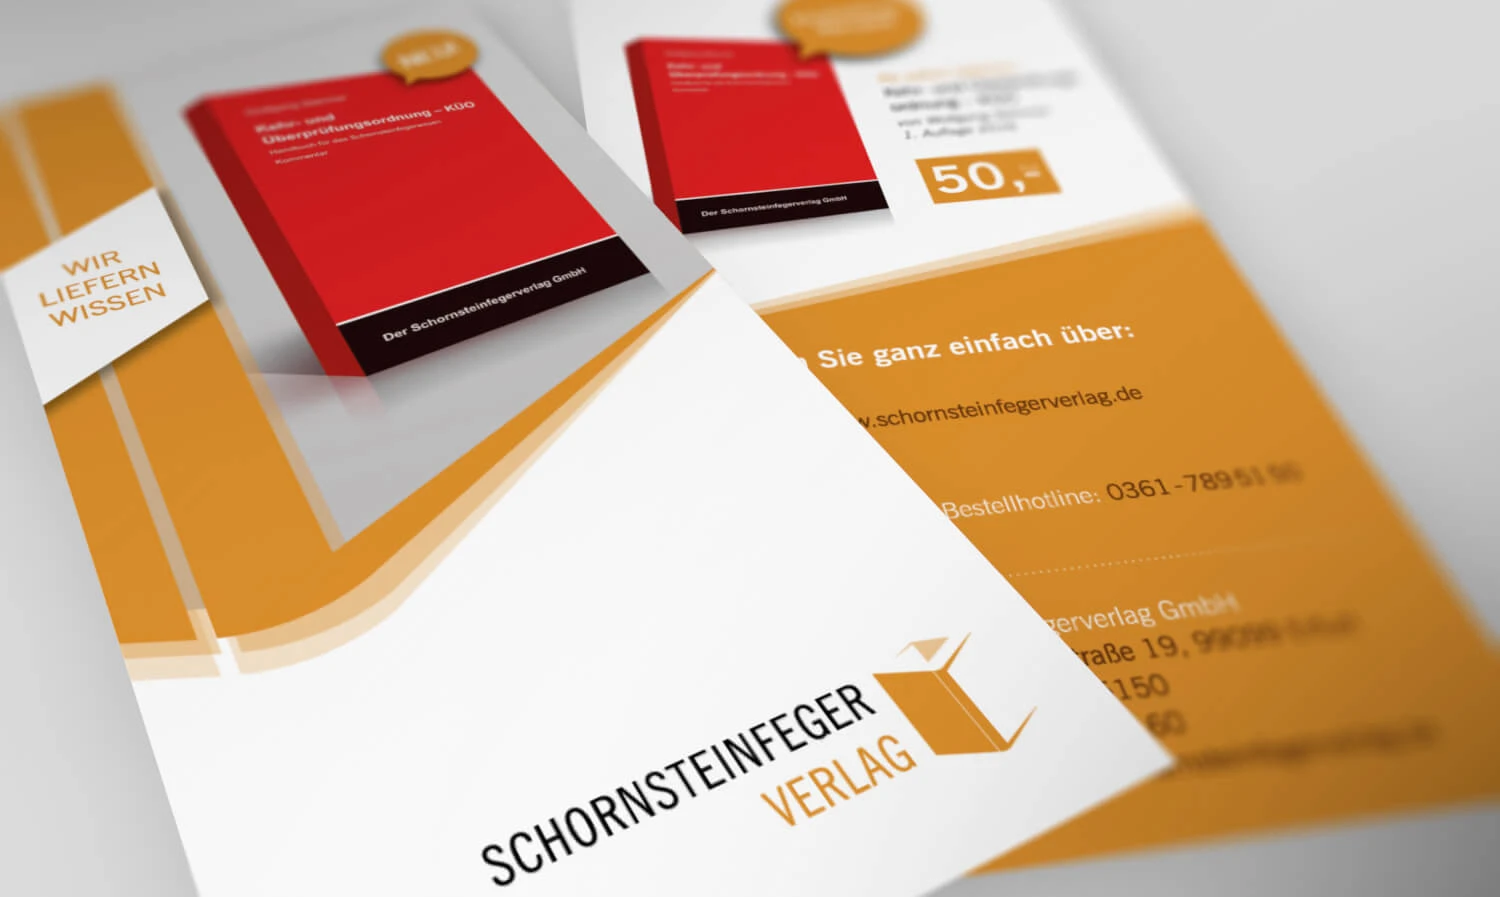 Schornsteinfegerverlag - Flyer im Hochkantformat